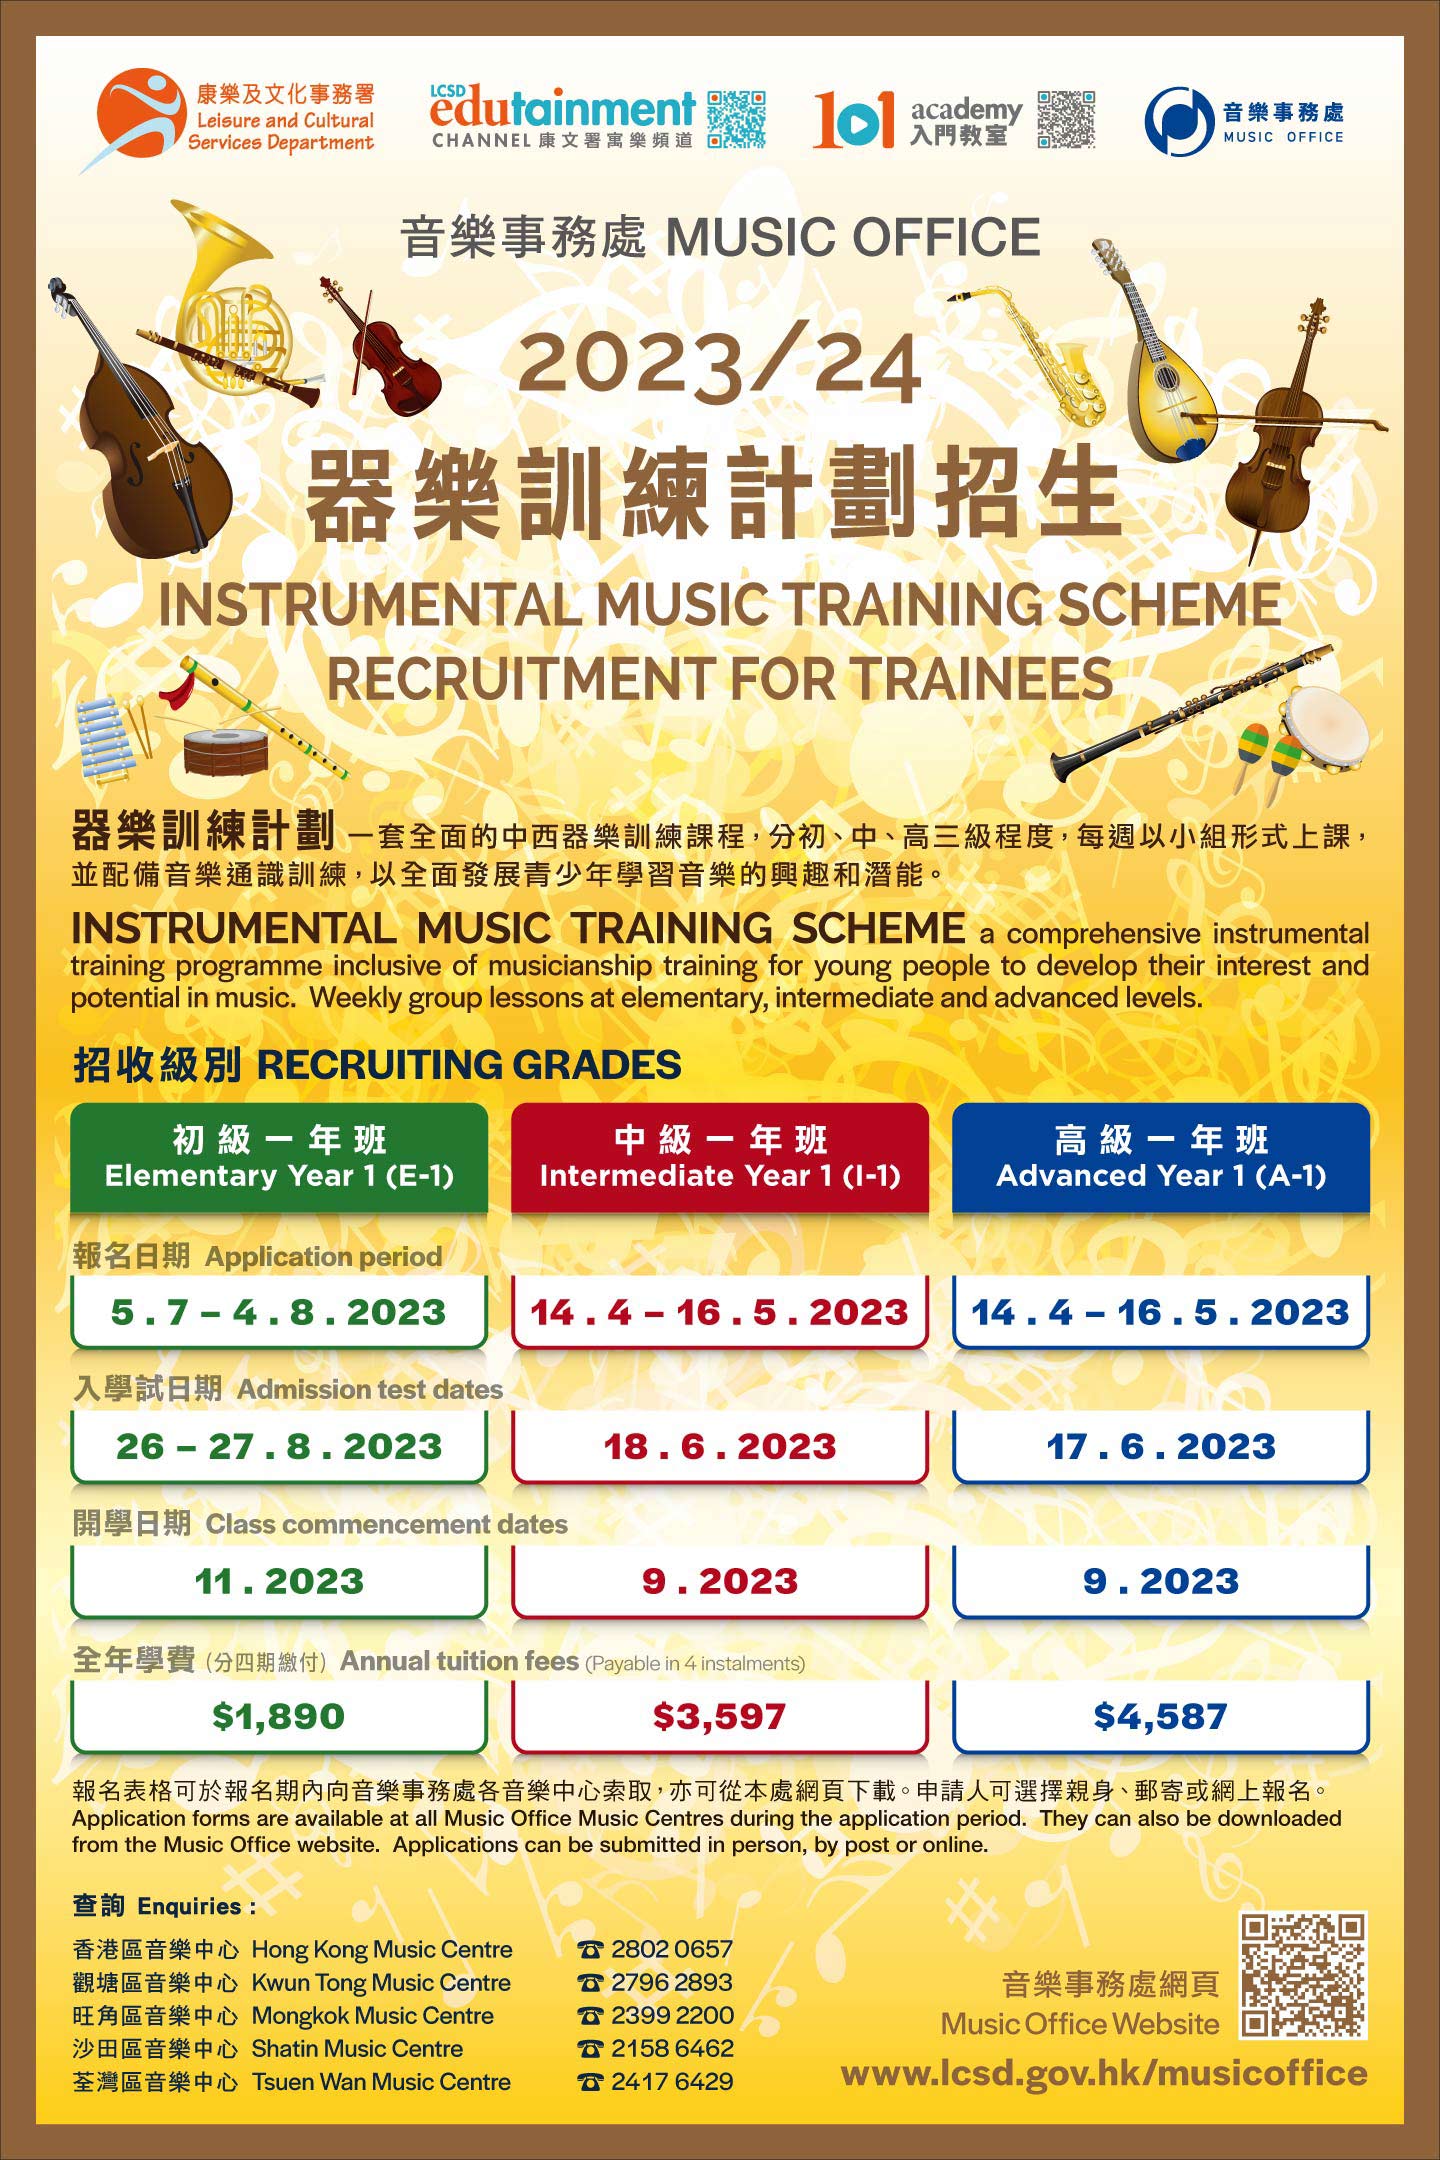 2023/24器樂訓練計劃中級一年班(I-1)及高級一年班(A-1)招生